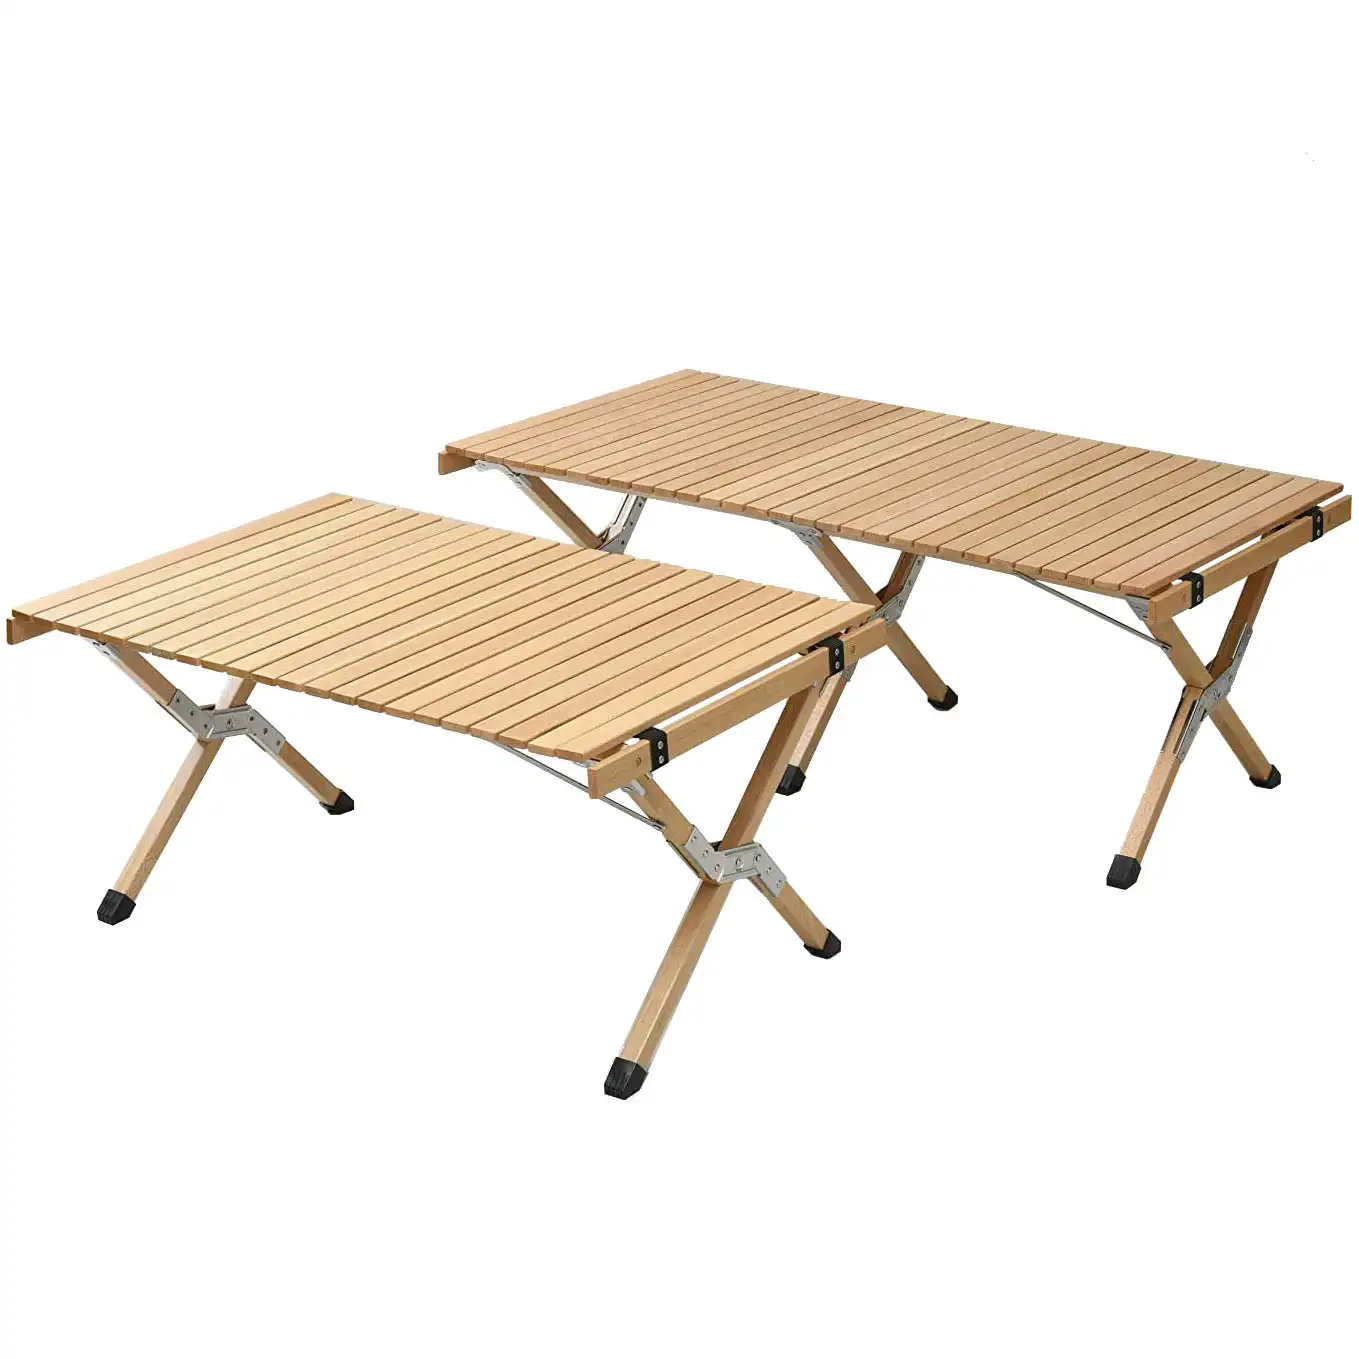 Новый обновленный складной деревянный стол для пикника и кемпинга, деревянный стол для пикника на открытом воздухе, пляжа, сада, барбекю, дорожных поездок, обеденные столы, 2021